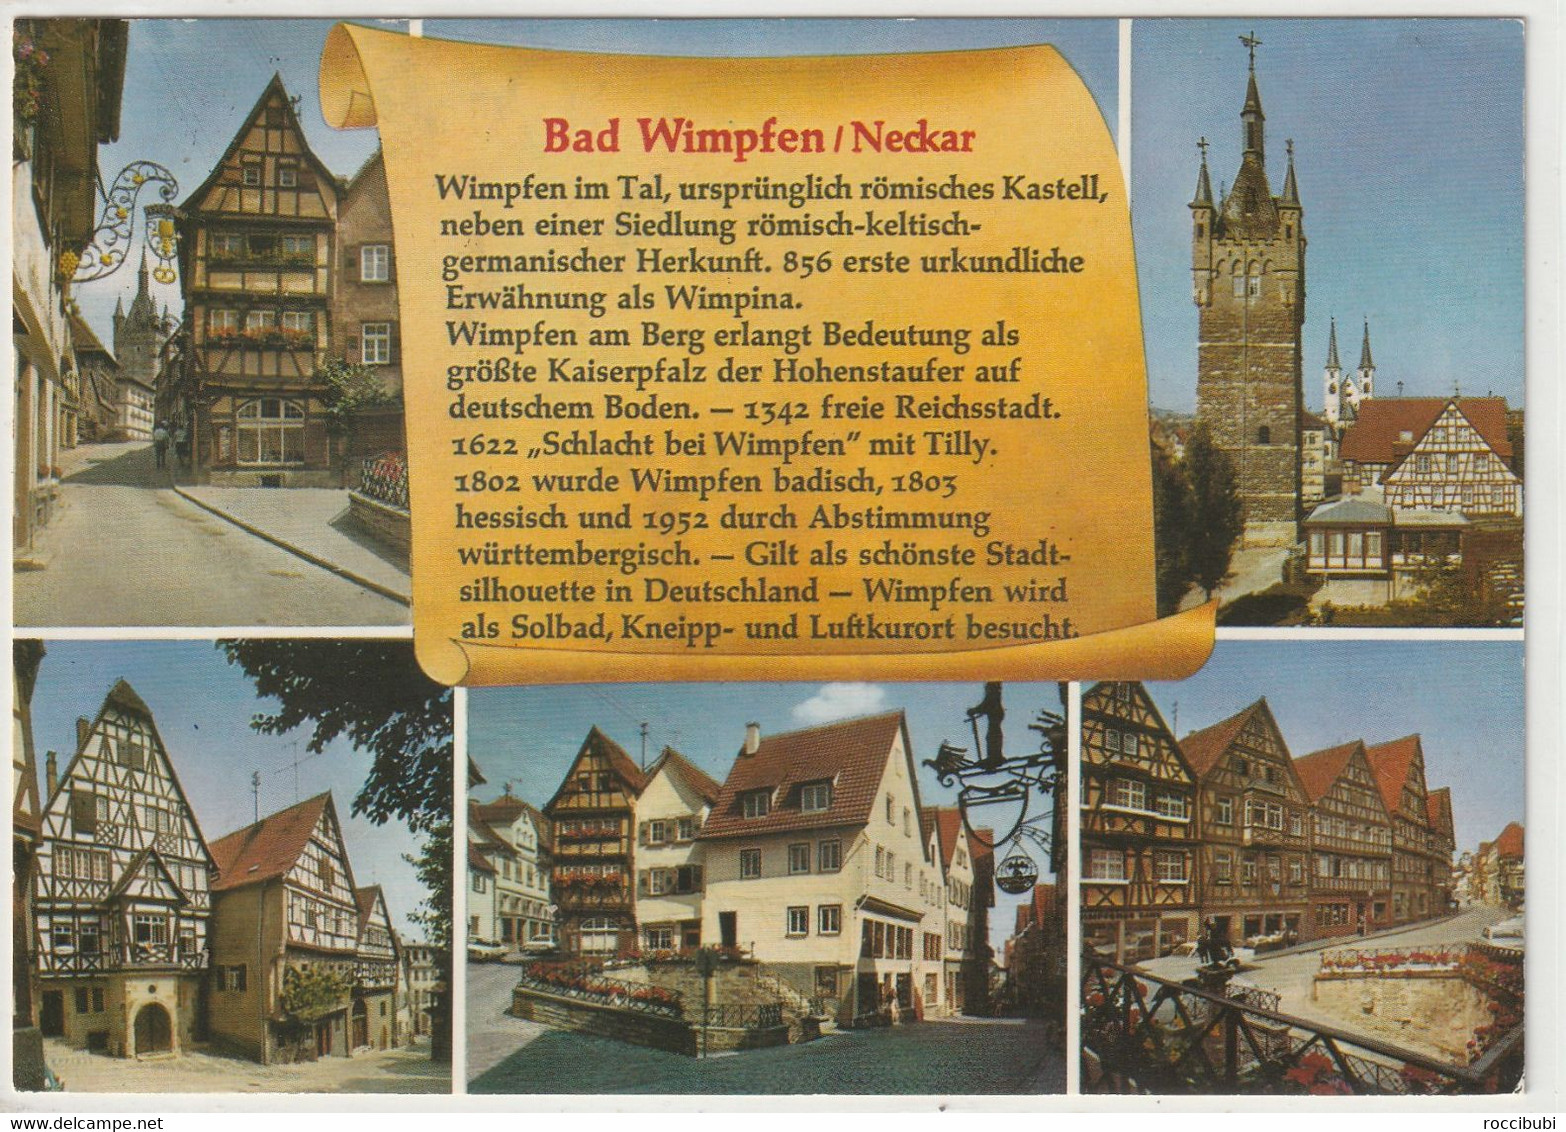 Bad Wimpfen, Baden-Württemberg - Bad Wimpfen